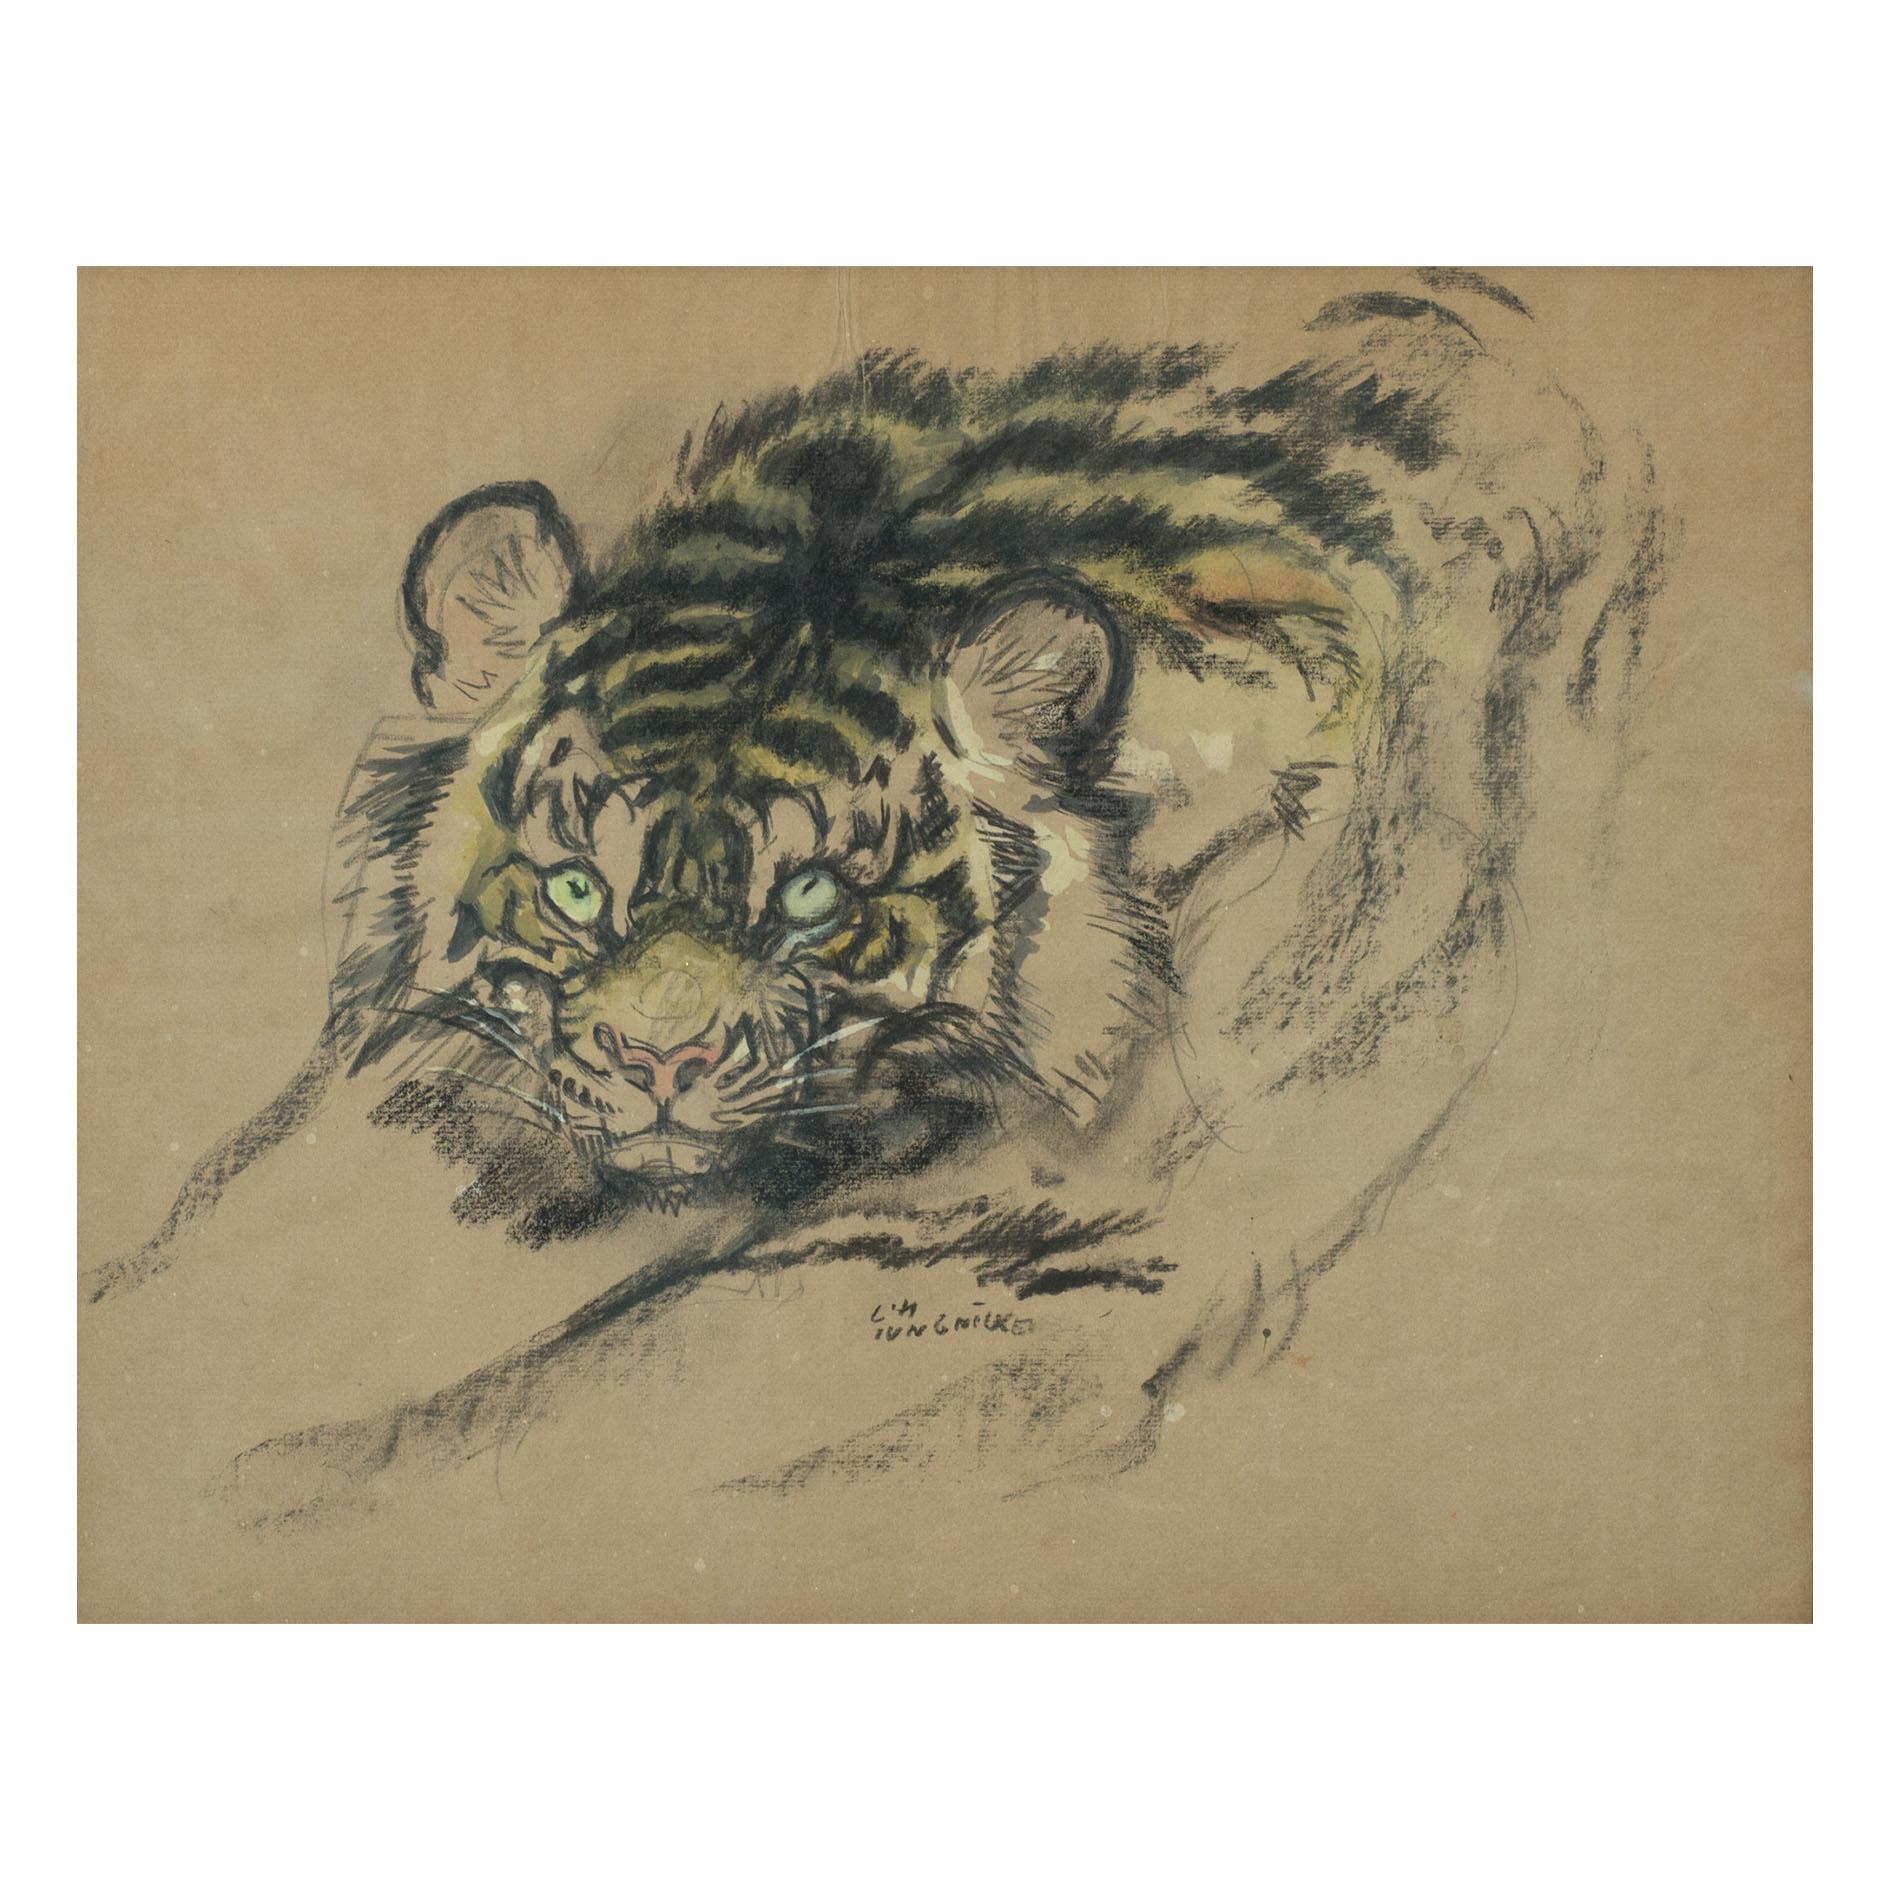 Austrian Artwork Tiger Ludwig Heinrich Jungnickel Carbon Watercolor on Paper circa 1930